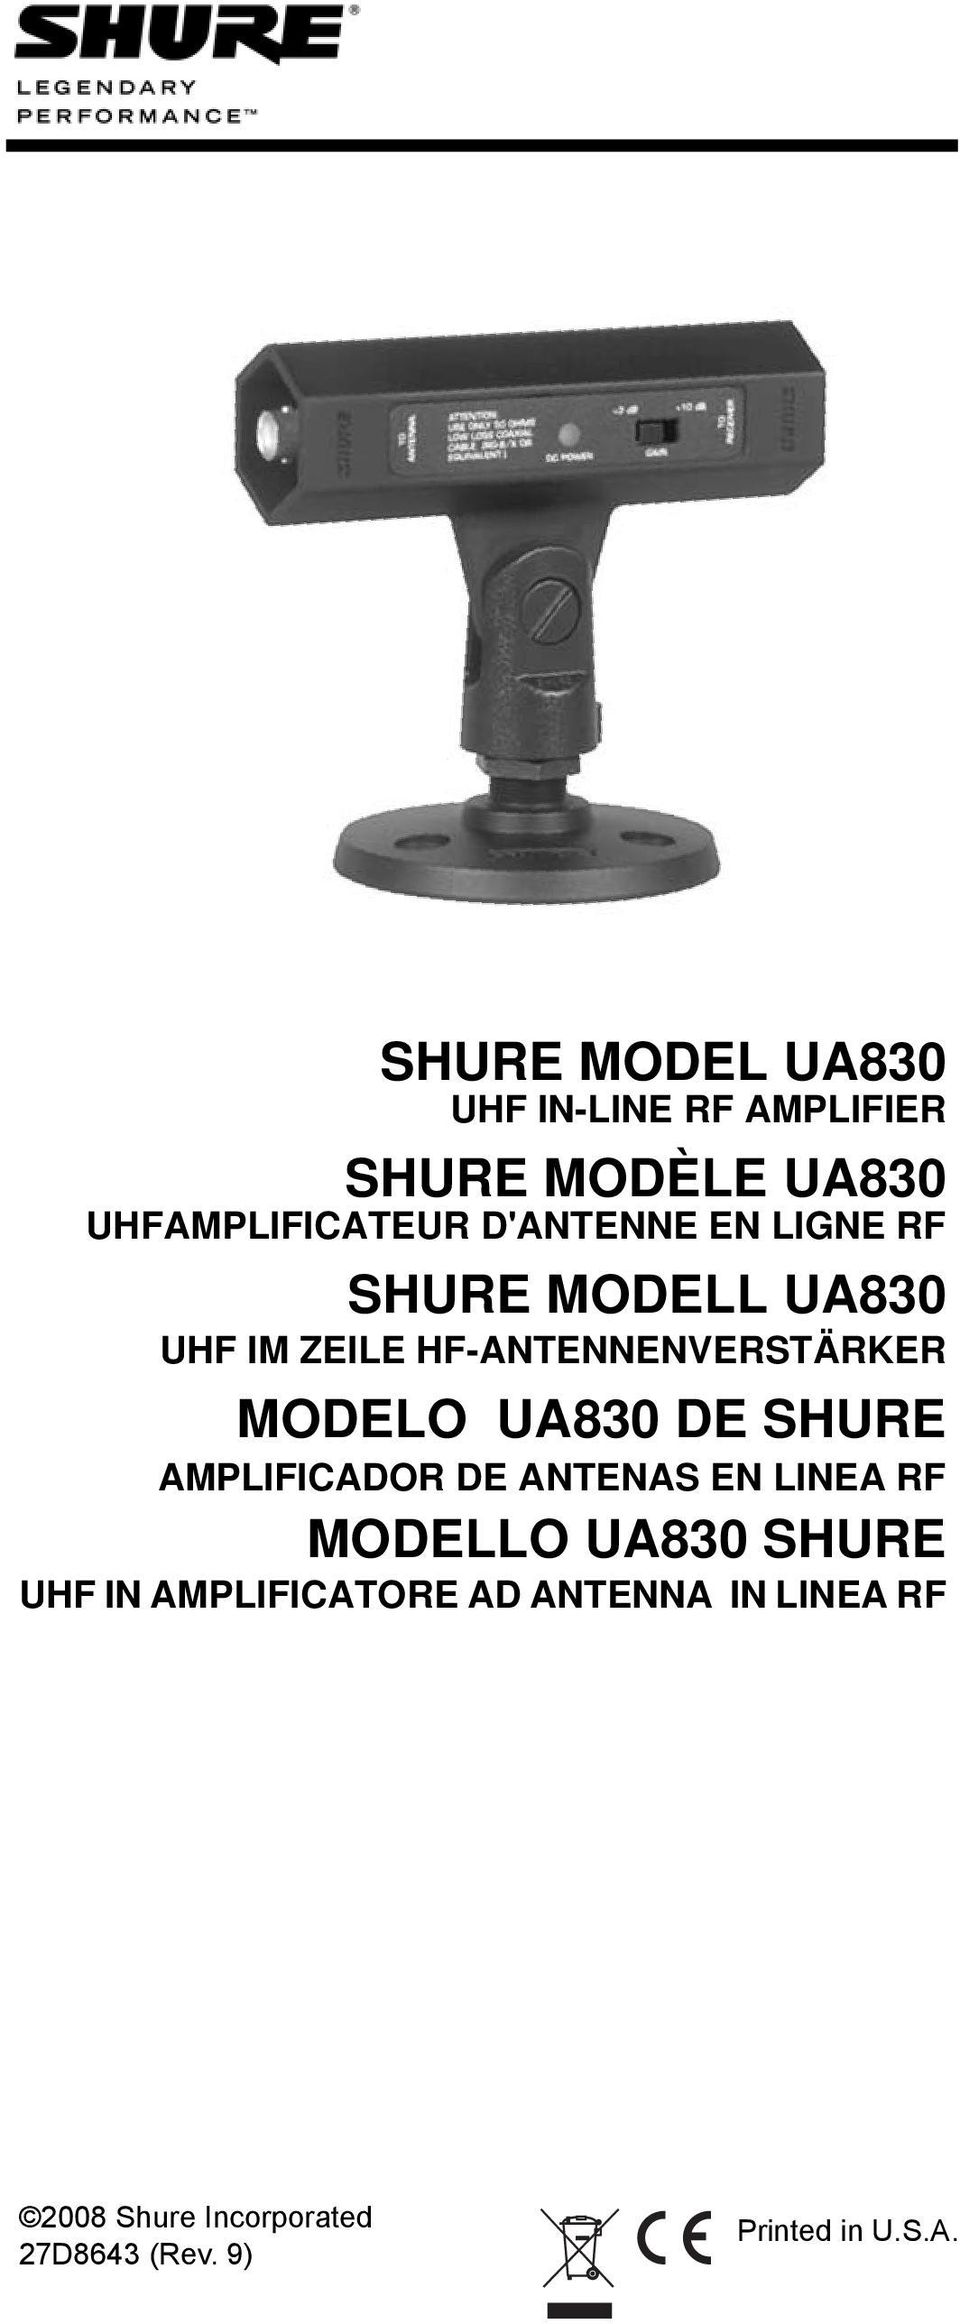 UA830 DE SHURE AMPLIFICADOR DE ANTENAS EN LINEA RF MODELLO UA830 SHURE UHF IN